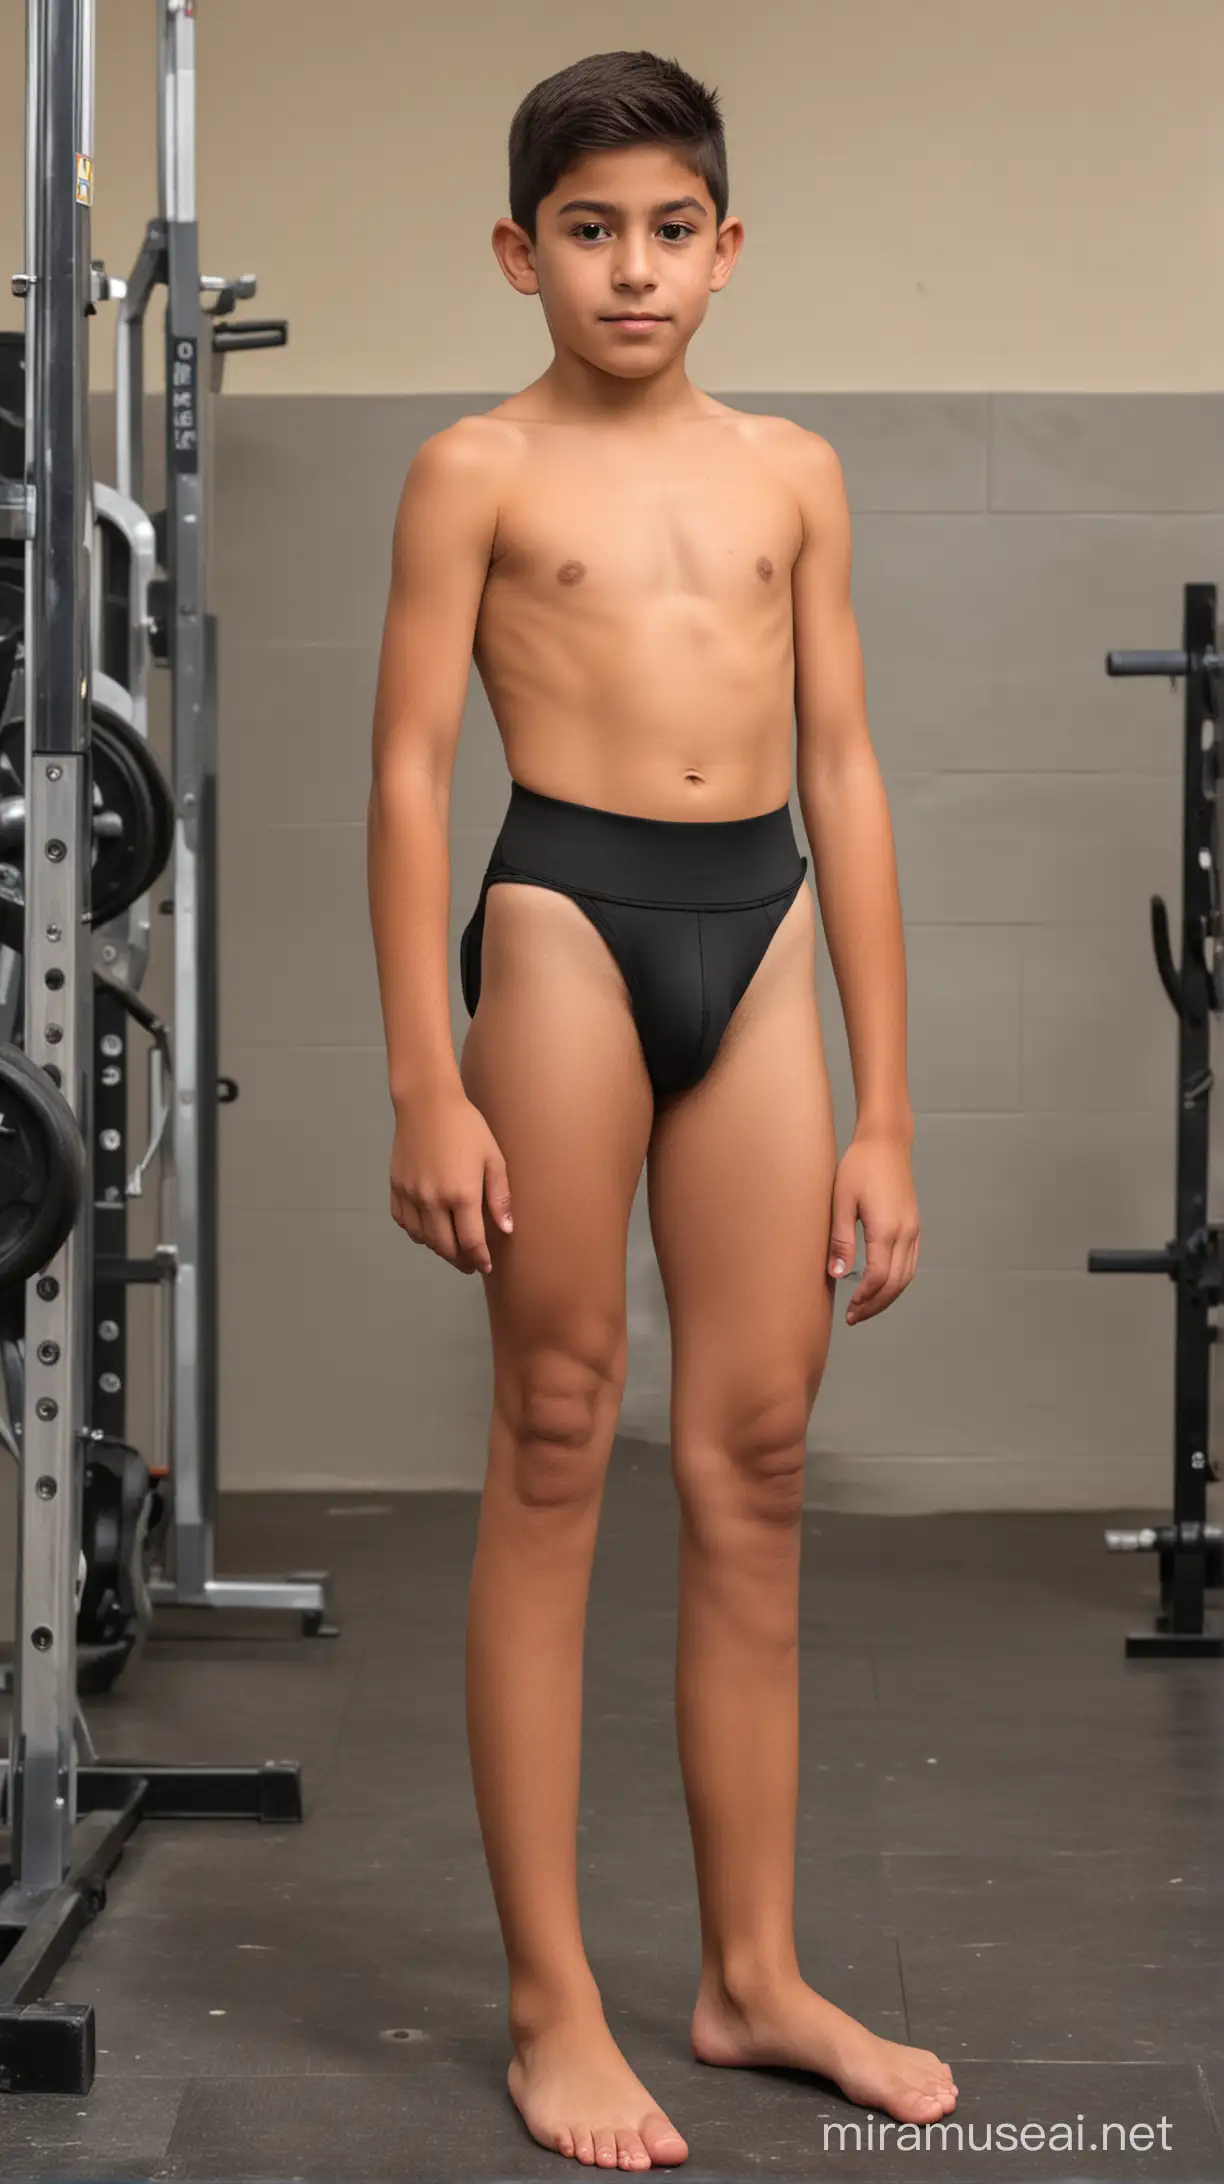 Skinny 10YearOld Mexican Boy Wearing Jockstrap in School Gym